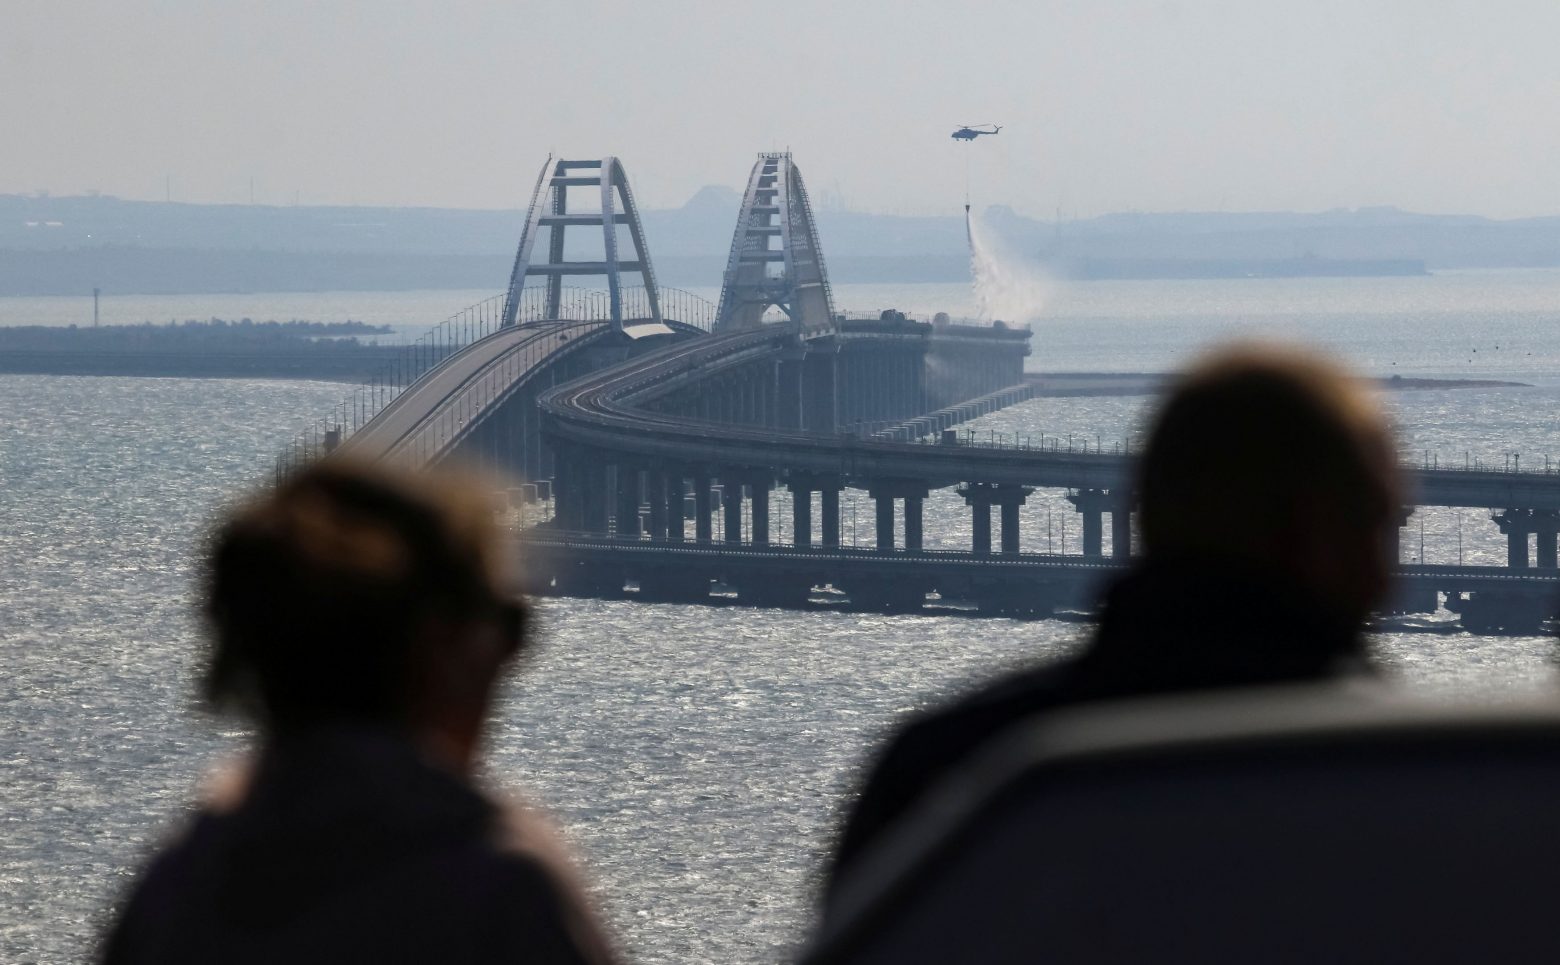 Ανάλυση Guardian: Οι επιπτώσεις της έκρηξης στη γέφυρα της Κριμαία θα φτάσουν μέχρι το Κρεμλίνο